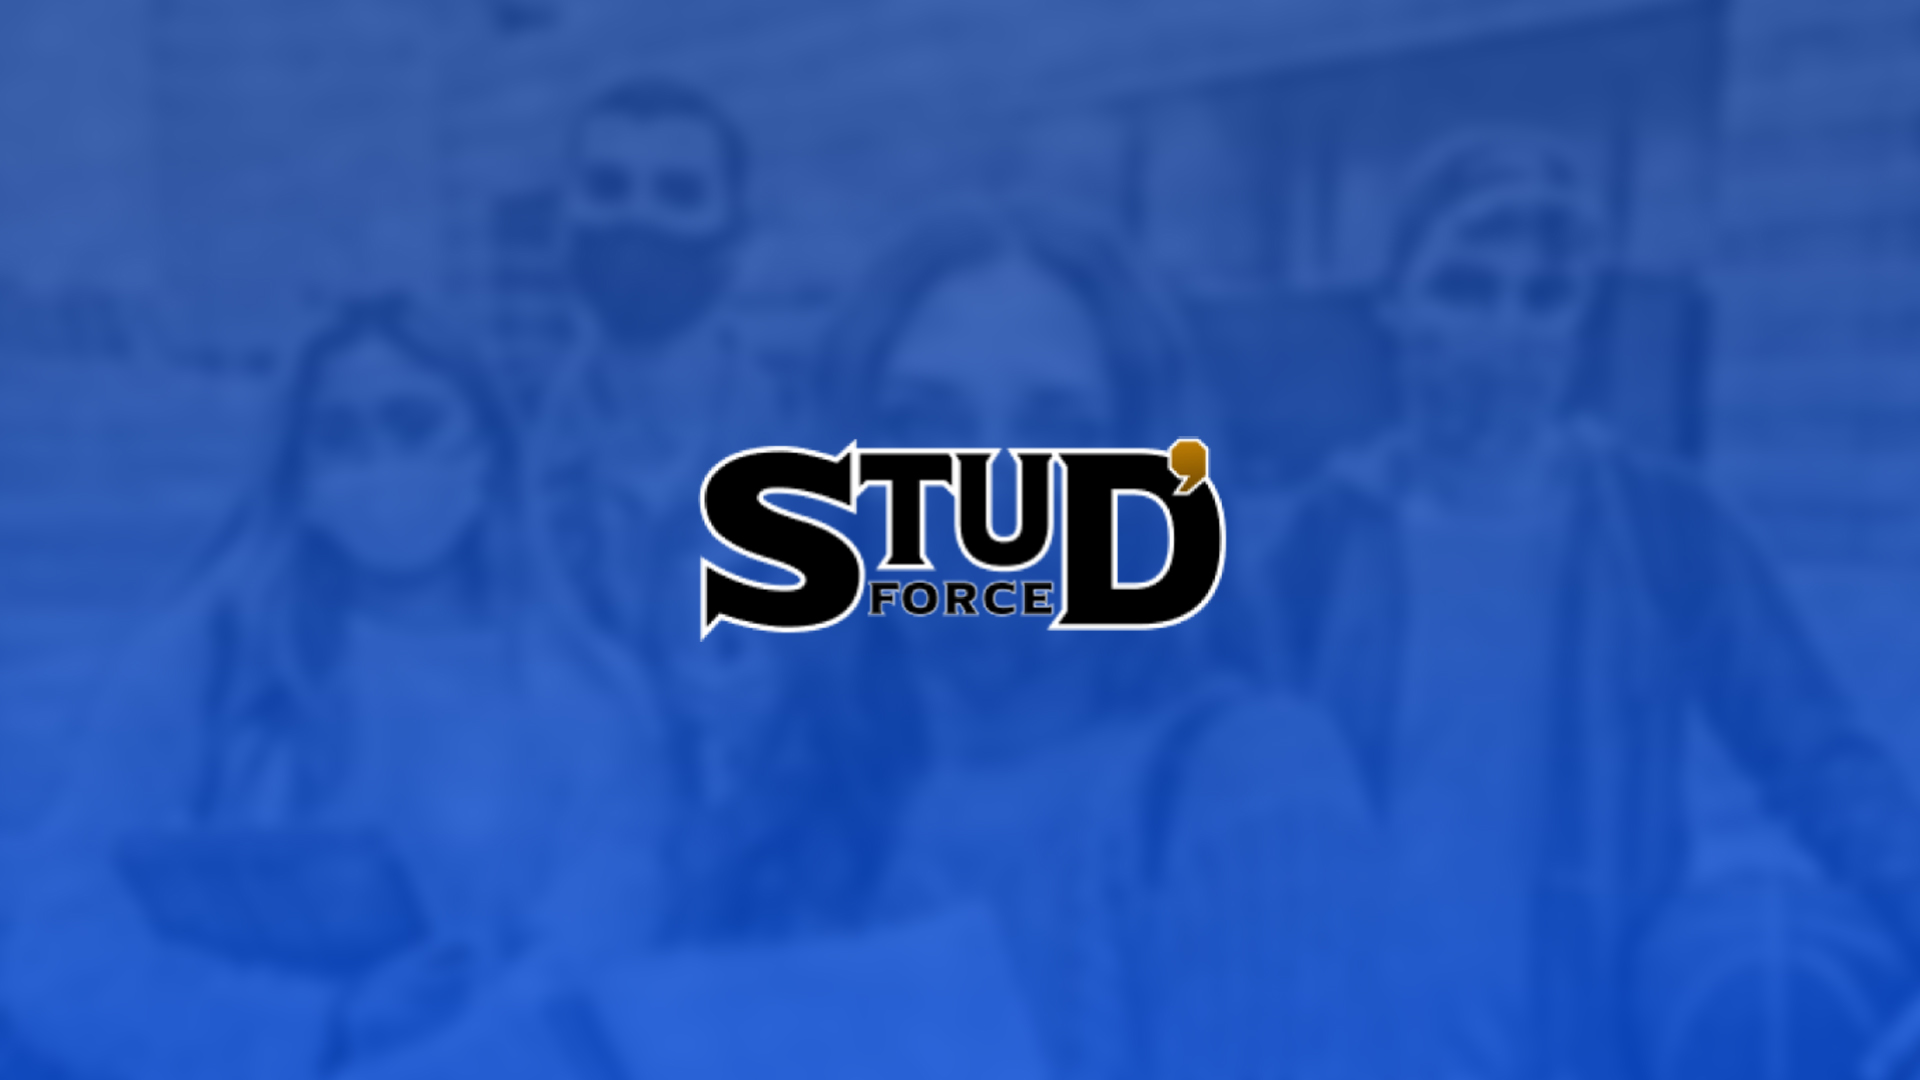 Sur Twitch, Stud'Force a levé plus de 131 000¬ pour le Secours Populaire contre la précarité étudiante